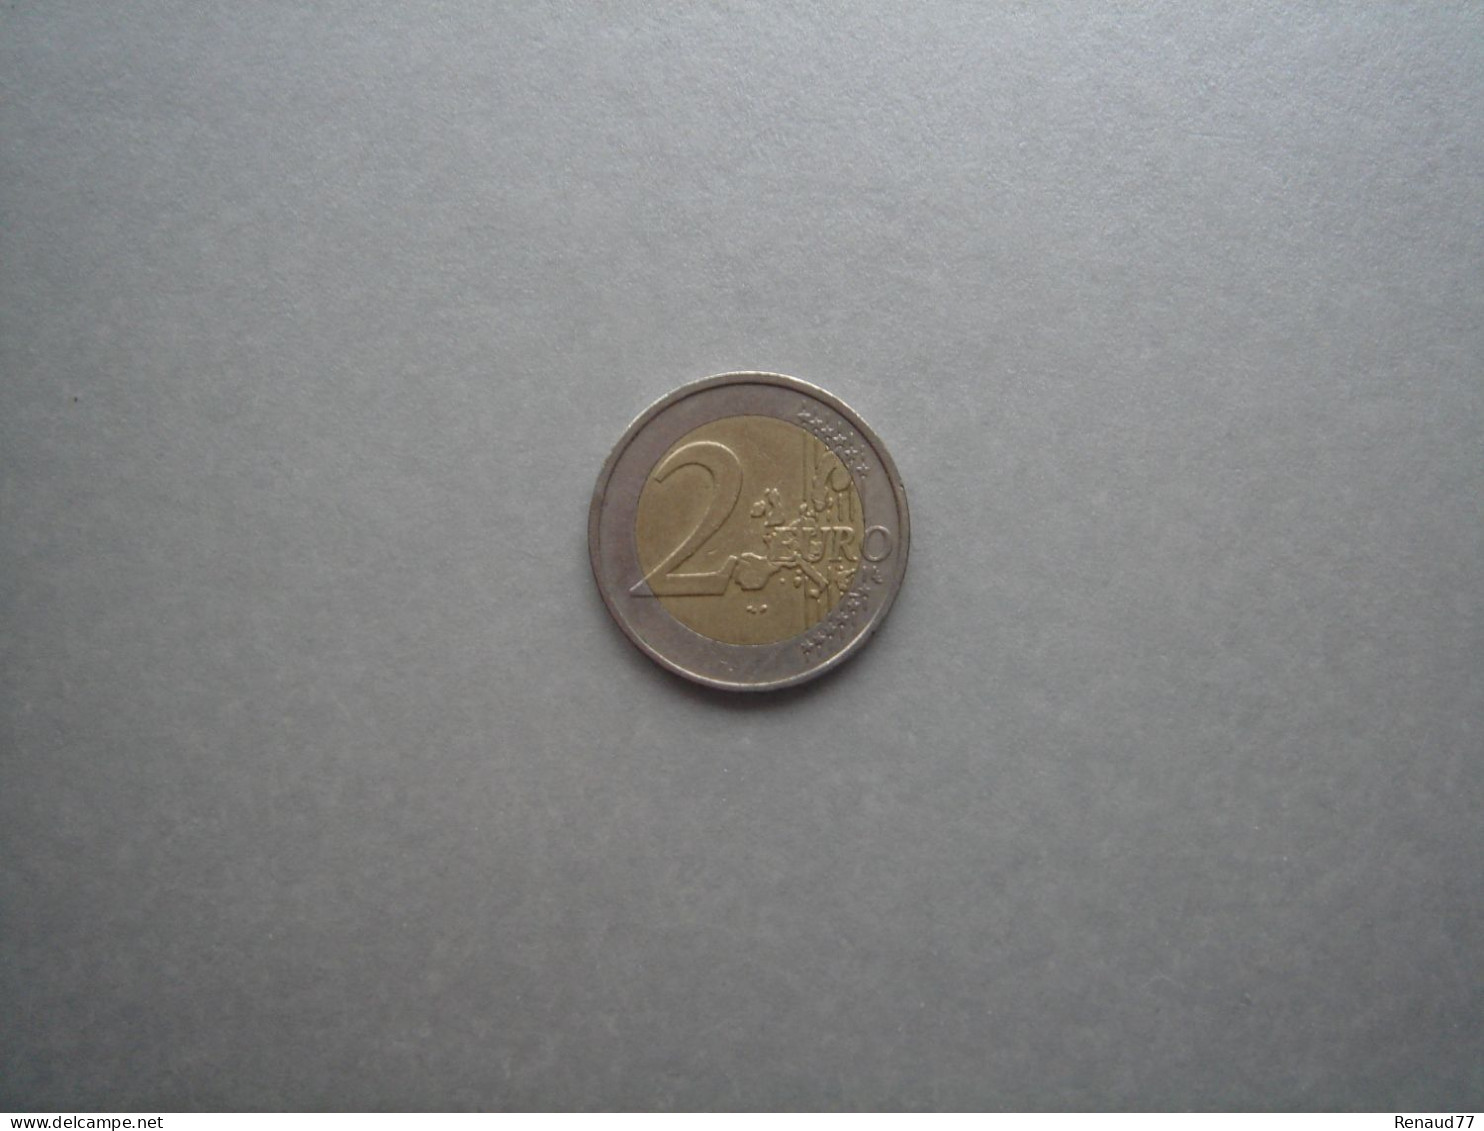 2 Euro Kursmünze 2002 Griechenland / Greece - Greece